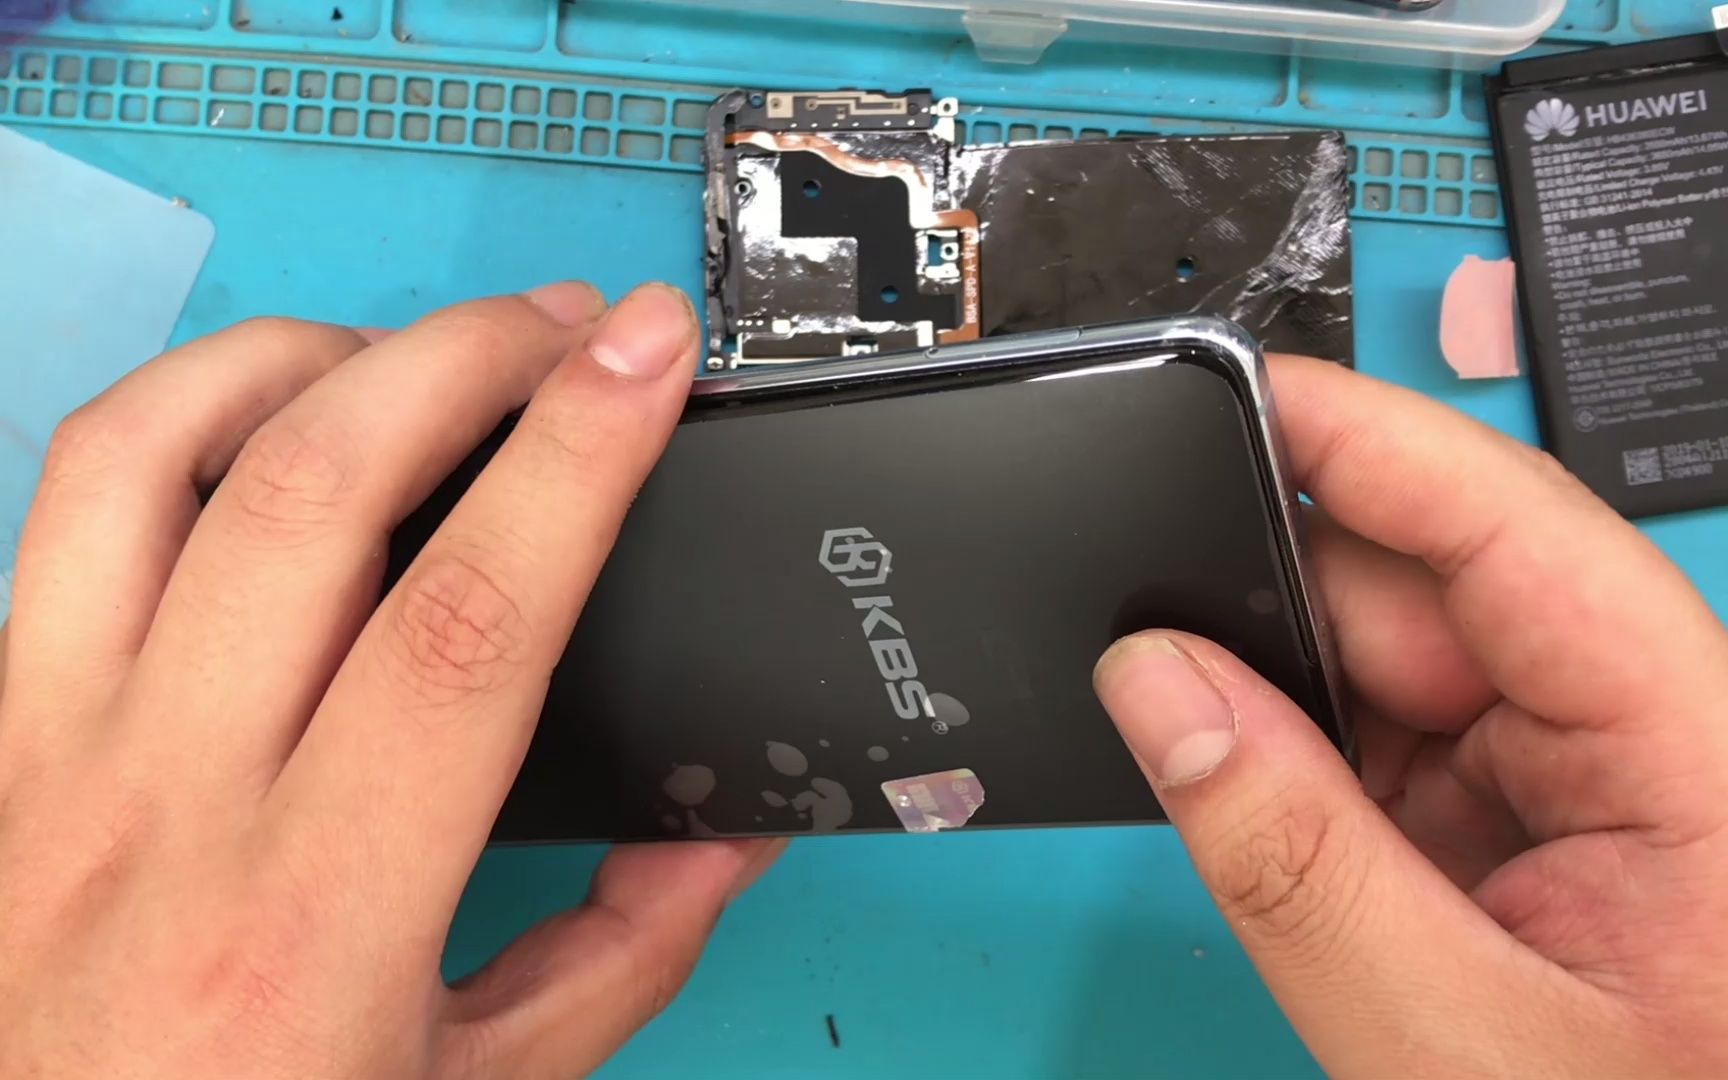 华为p30手机,摔碎屏幕坏了,只有换屏处理